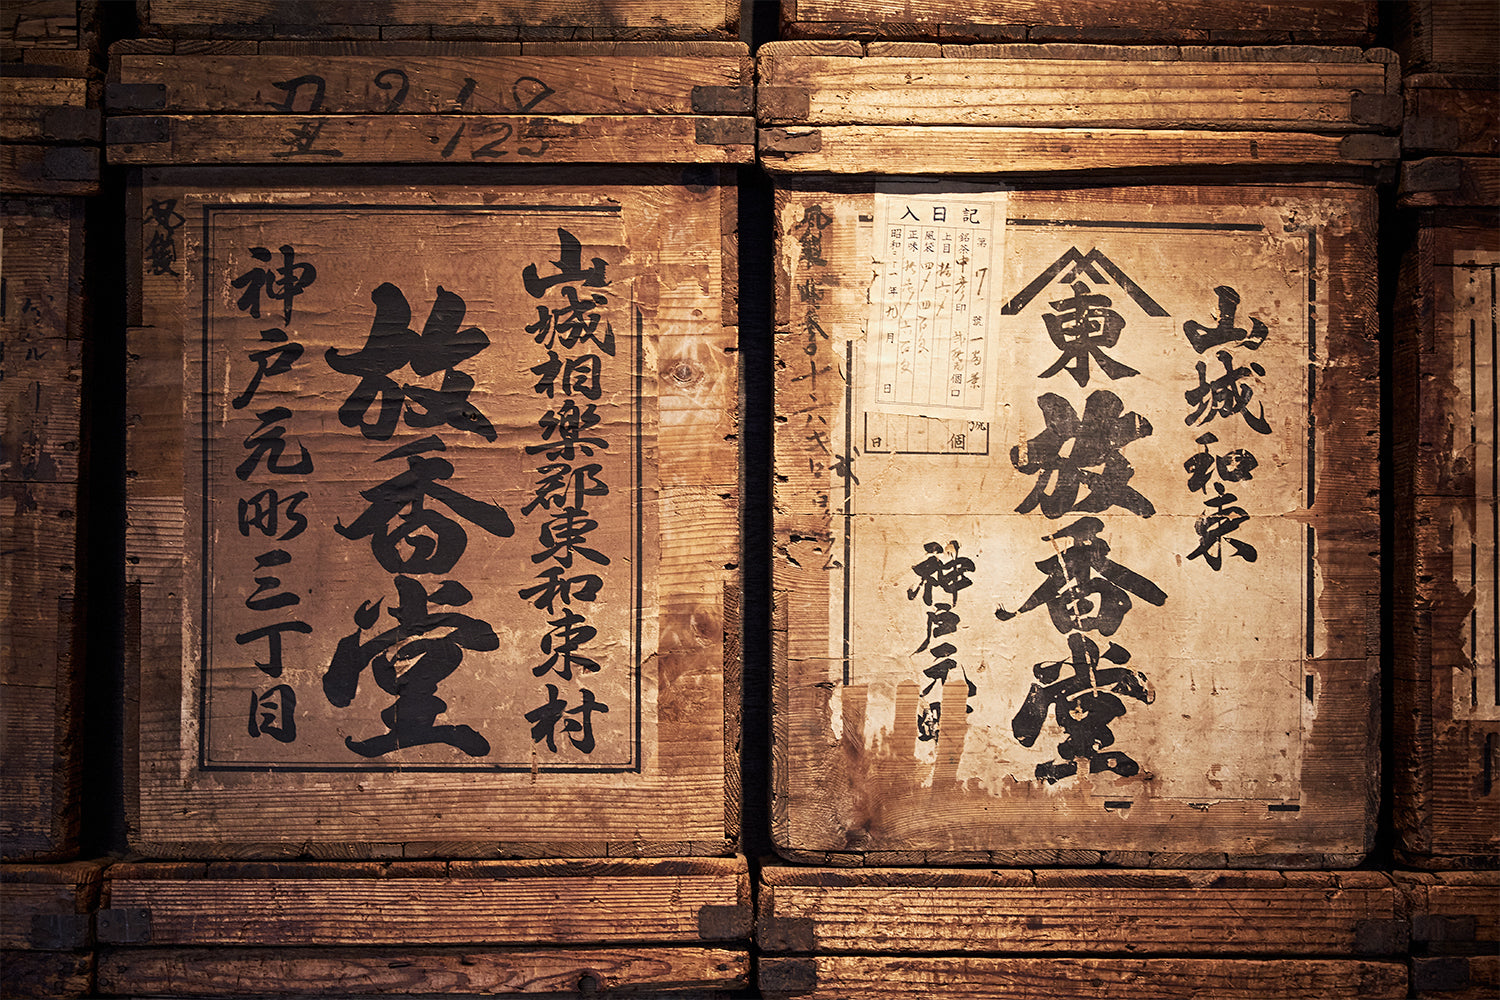 約180年もの間、おいしい日本茶作りの技を継承し続けている老舗です